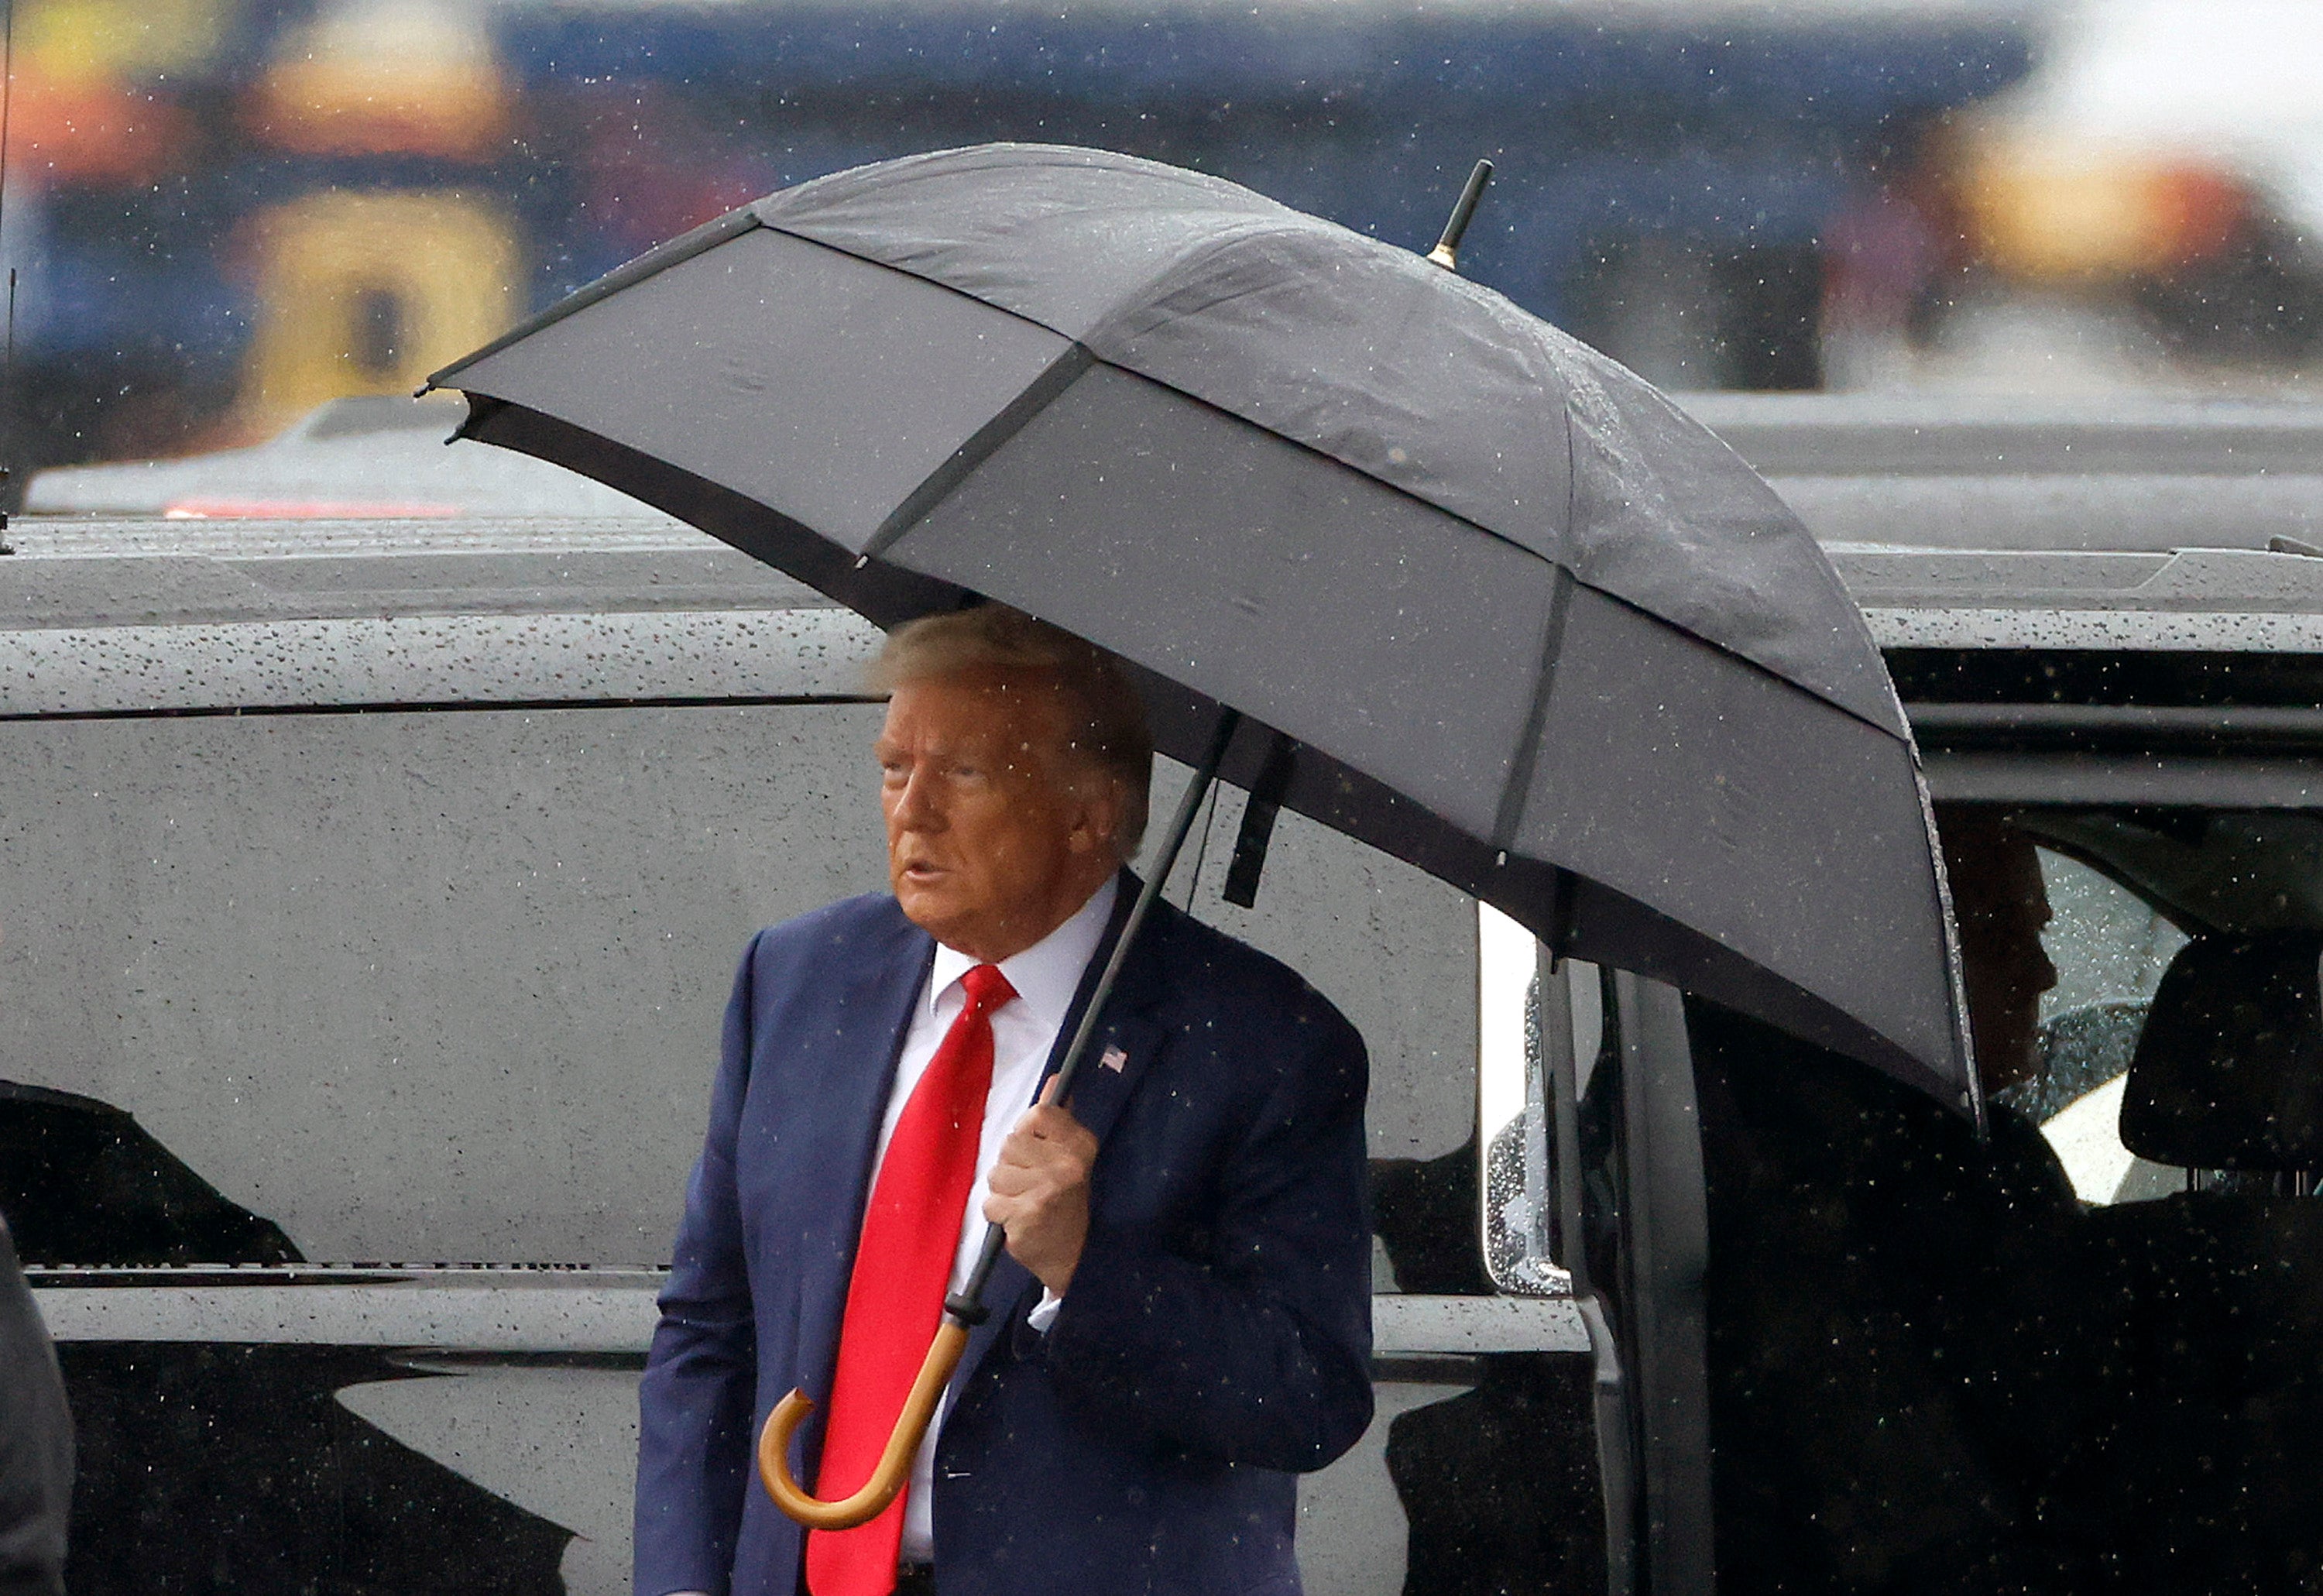 Donald Trump afirmó que presenció "suciedad” y "decadencia" en Washington DC tras su comparecencia el 3 de agosto